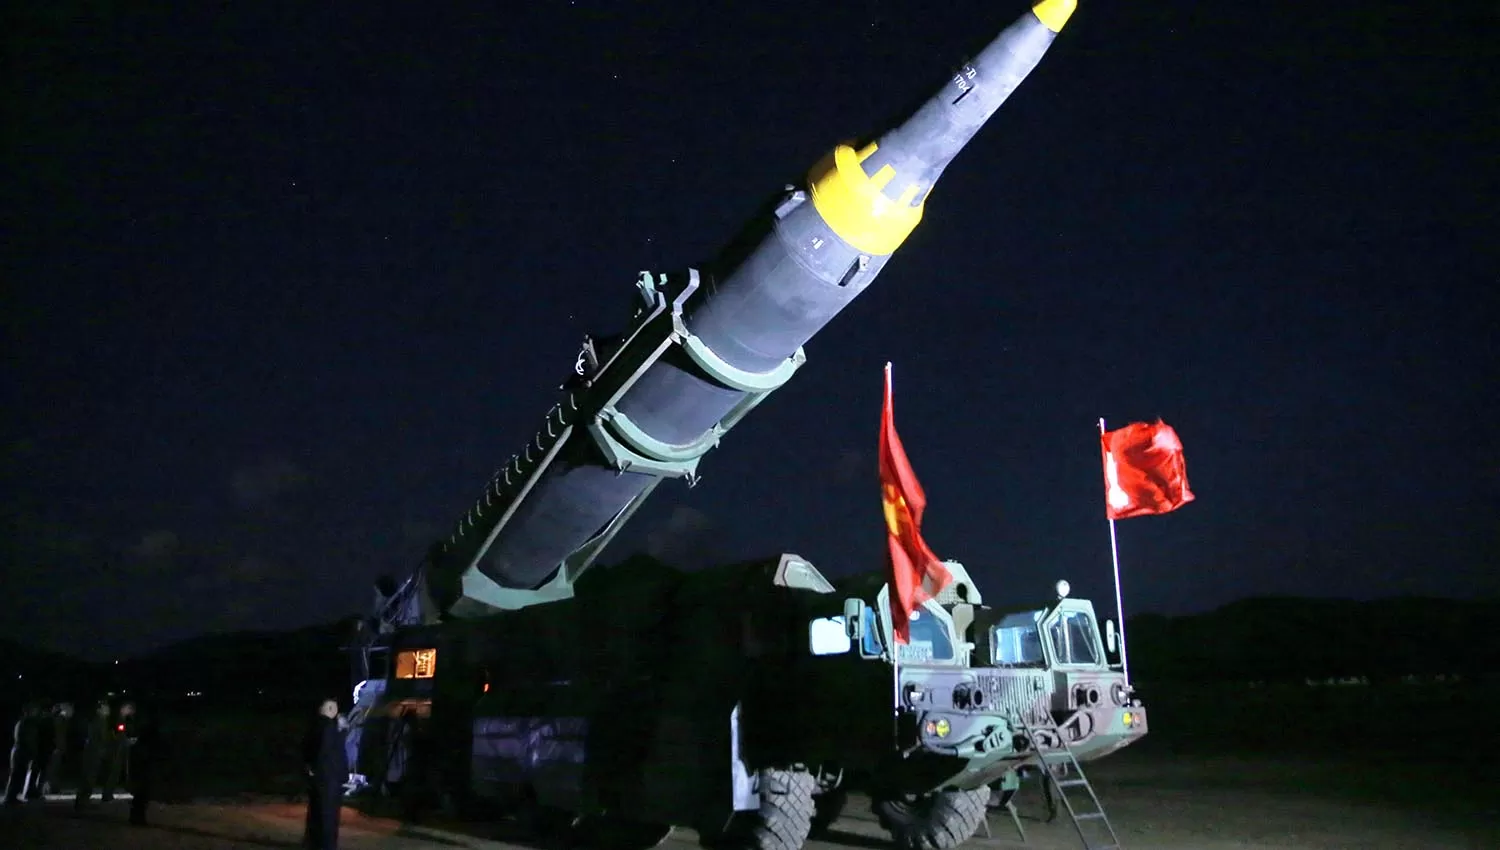 PODERÍO MILITAR. Uno de los misiles con los que Corea del Norte amenaza con atacar territorio norteamericano. REUTERS